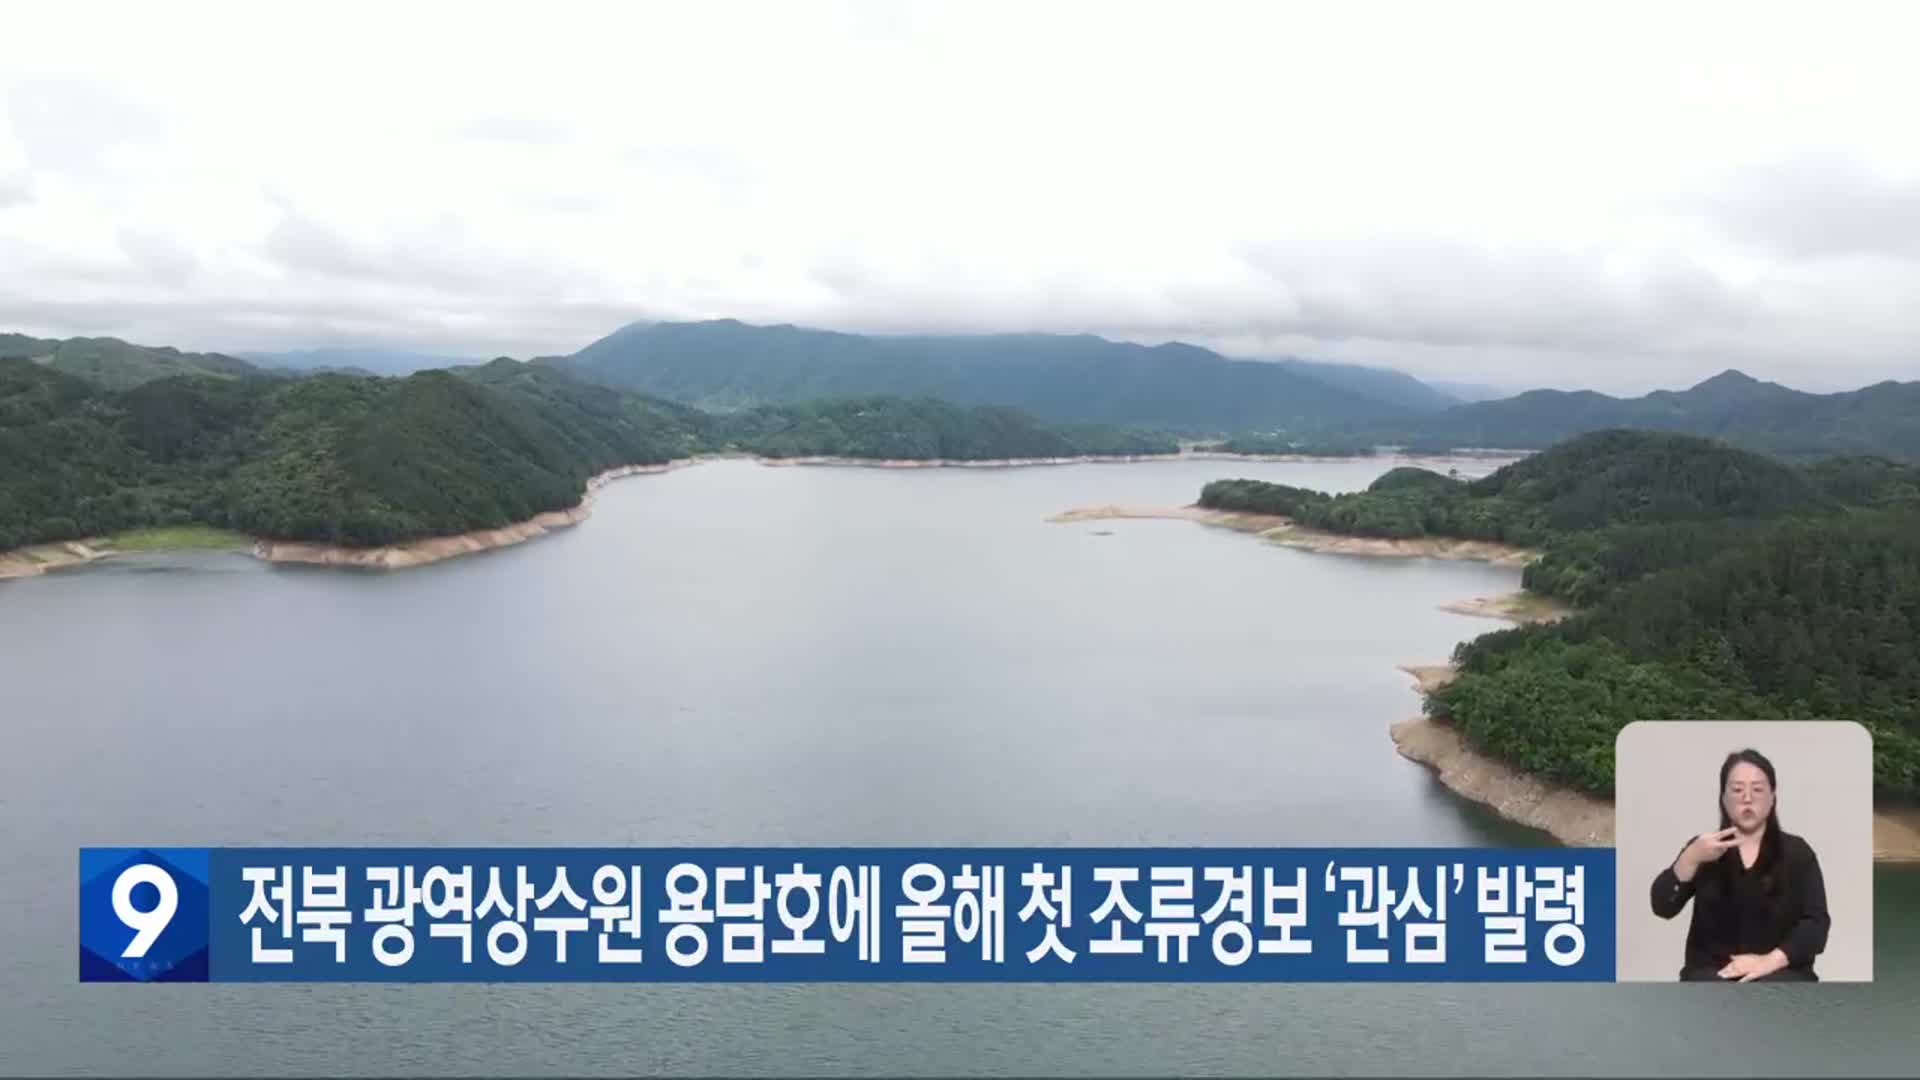 전북 광역상수원 용담호에 올해 첫 조류경보 ‘관심’ 발령